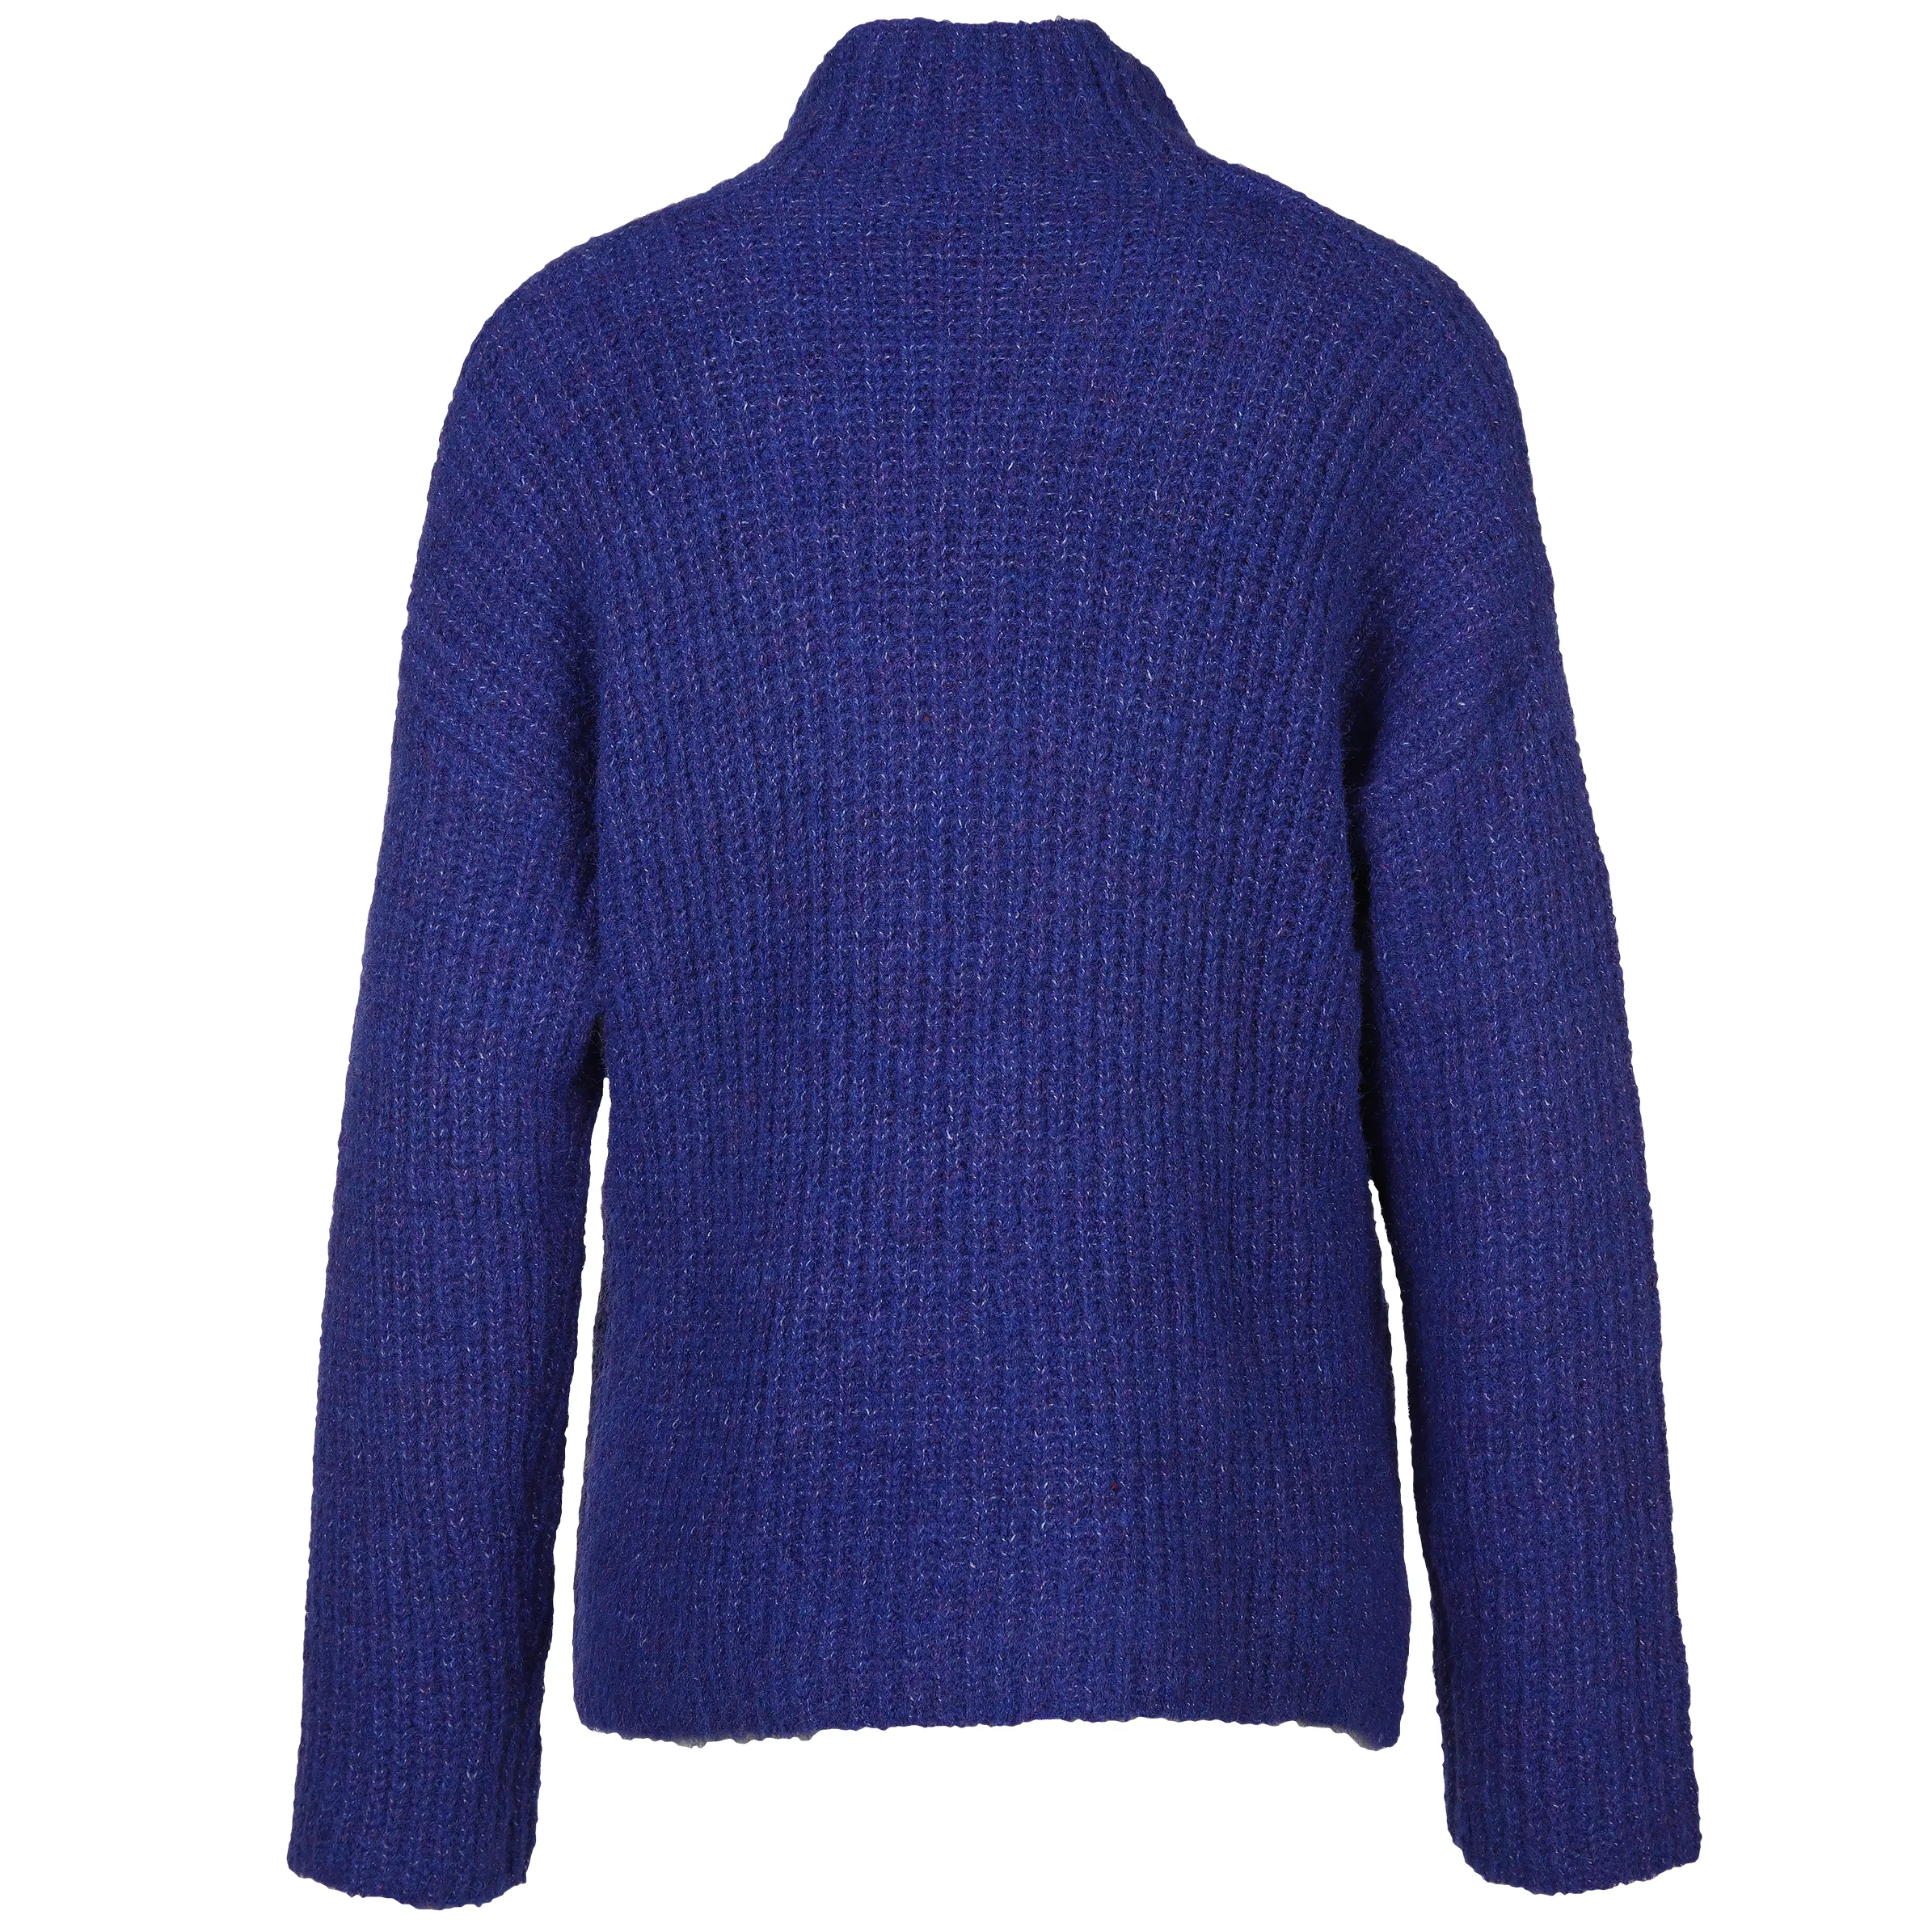 Tom Tailor 1039993 knit pullover mock-neck Blau 887462 33965 2